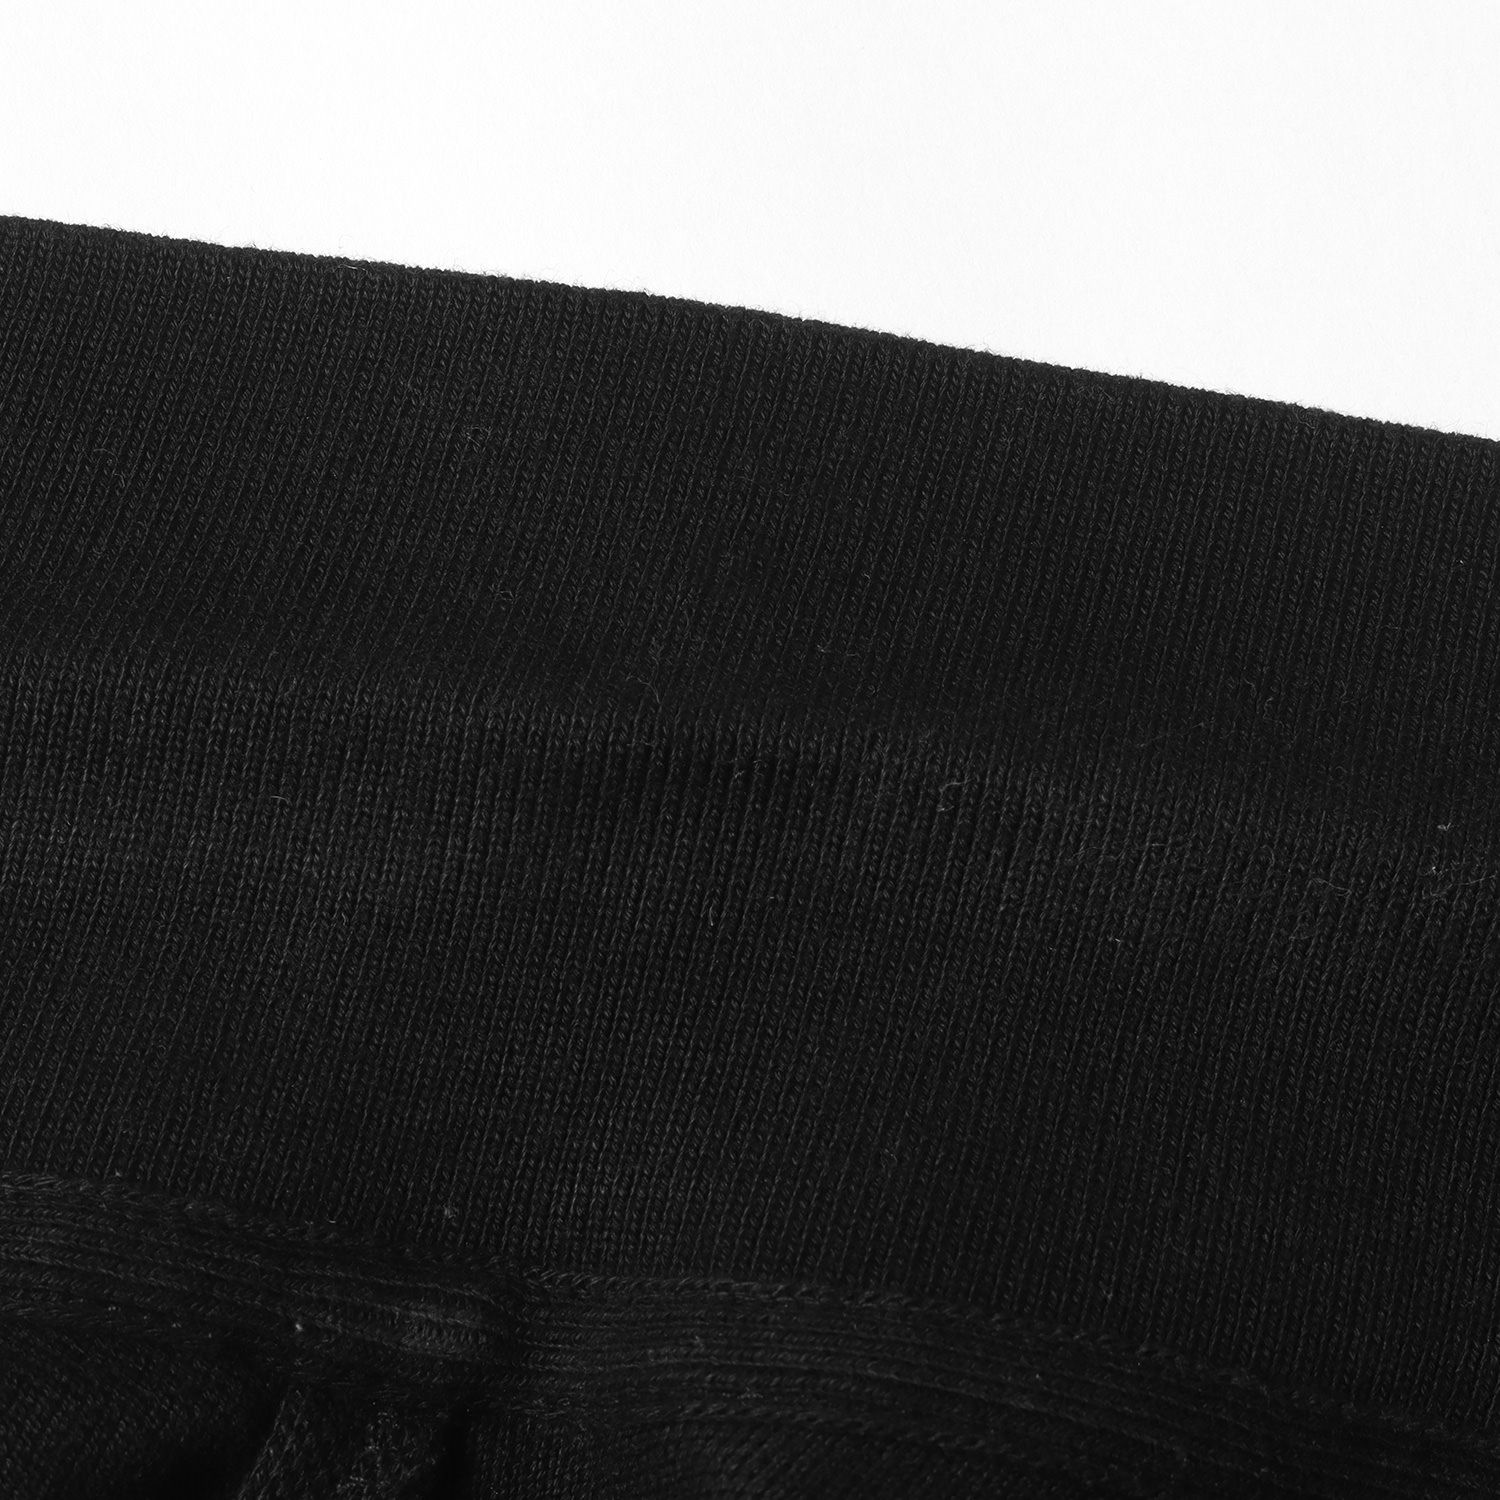 MONCLER モンクレール ポロシャツ サイズ:S ワンポイント アイコンロゴワッペン 半袖 鹿の子 (E10918340800 84556)  カノコ 19SS ブラック 黒 カットソー トップス カジュアル ブランド